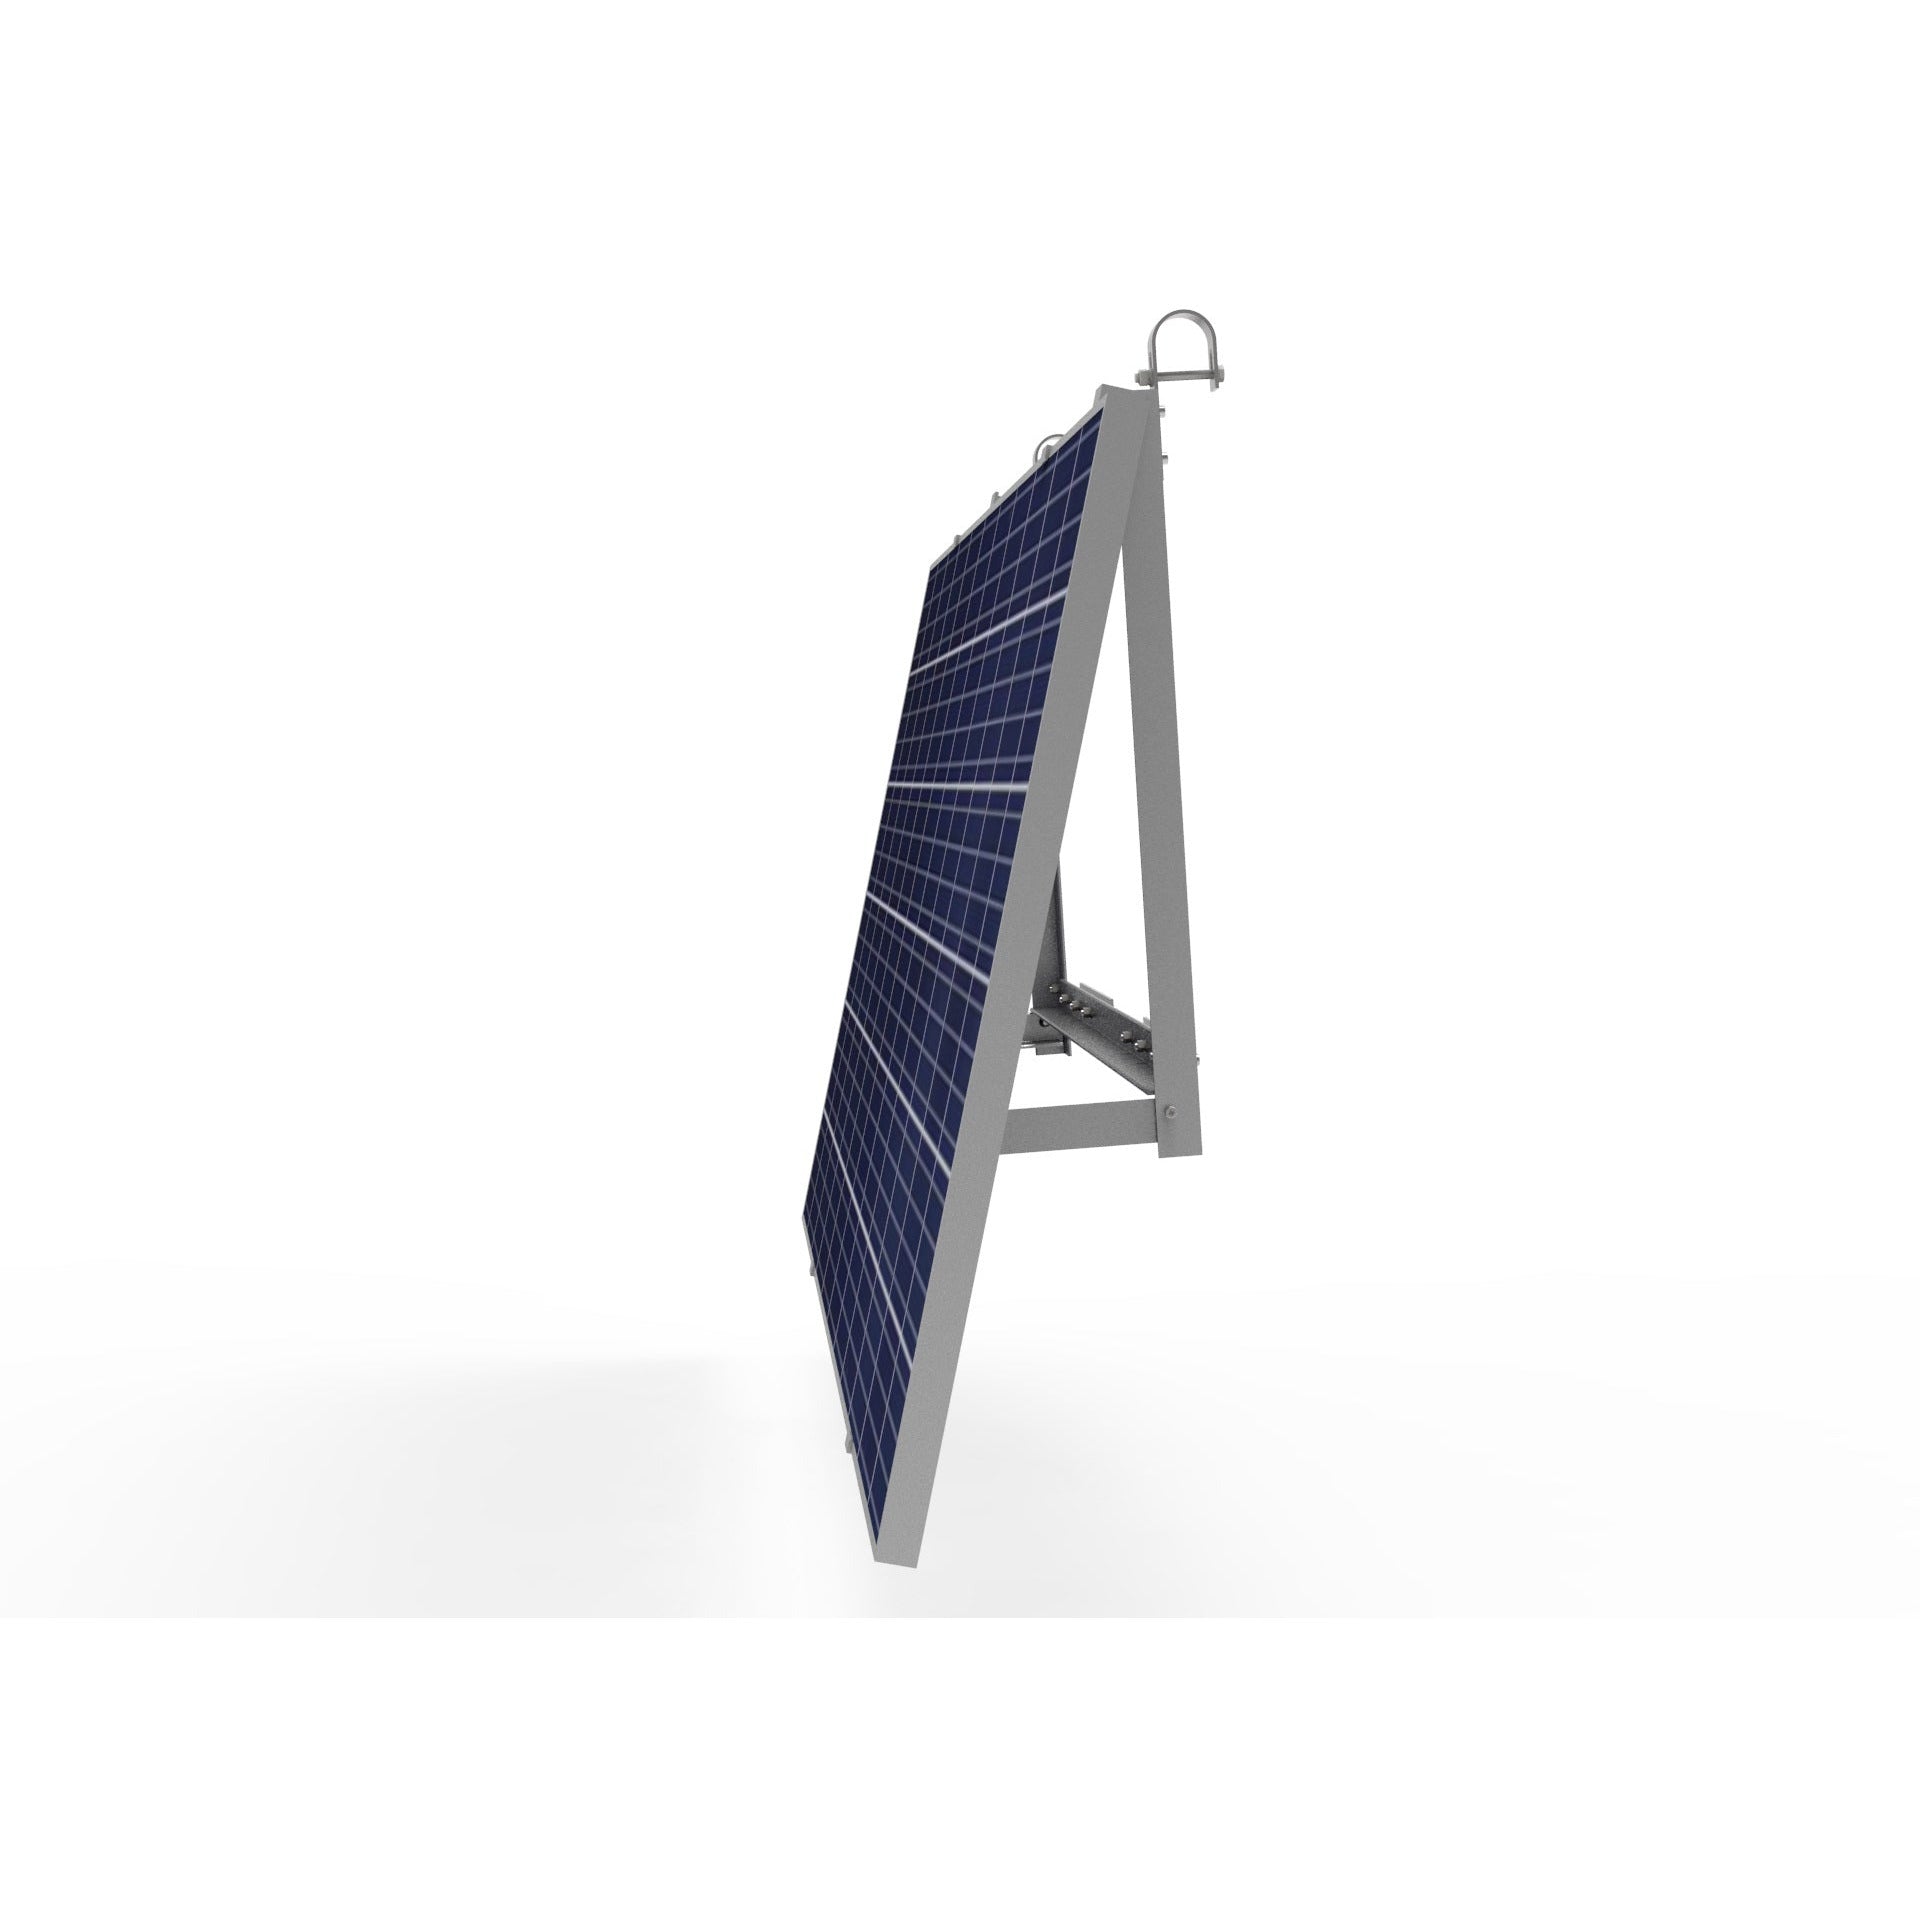 Balkonhalterung für Balkonkraftwerke 1 Solarmodul Alu 15°